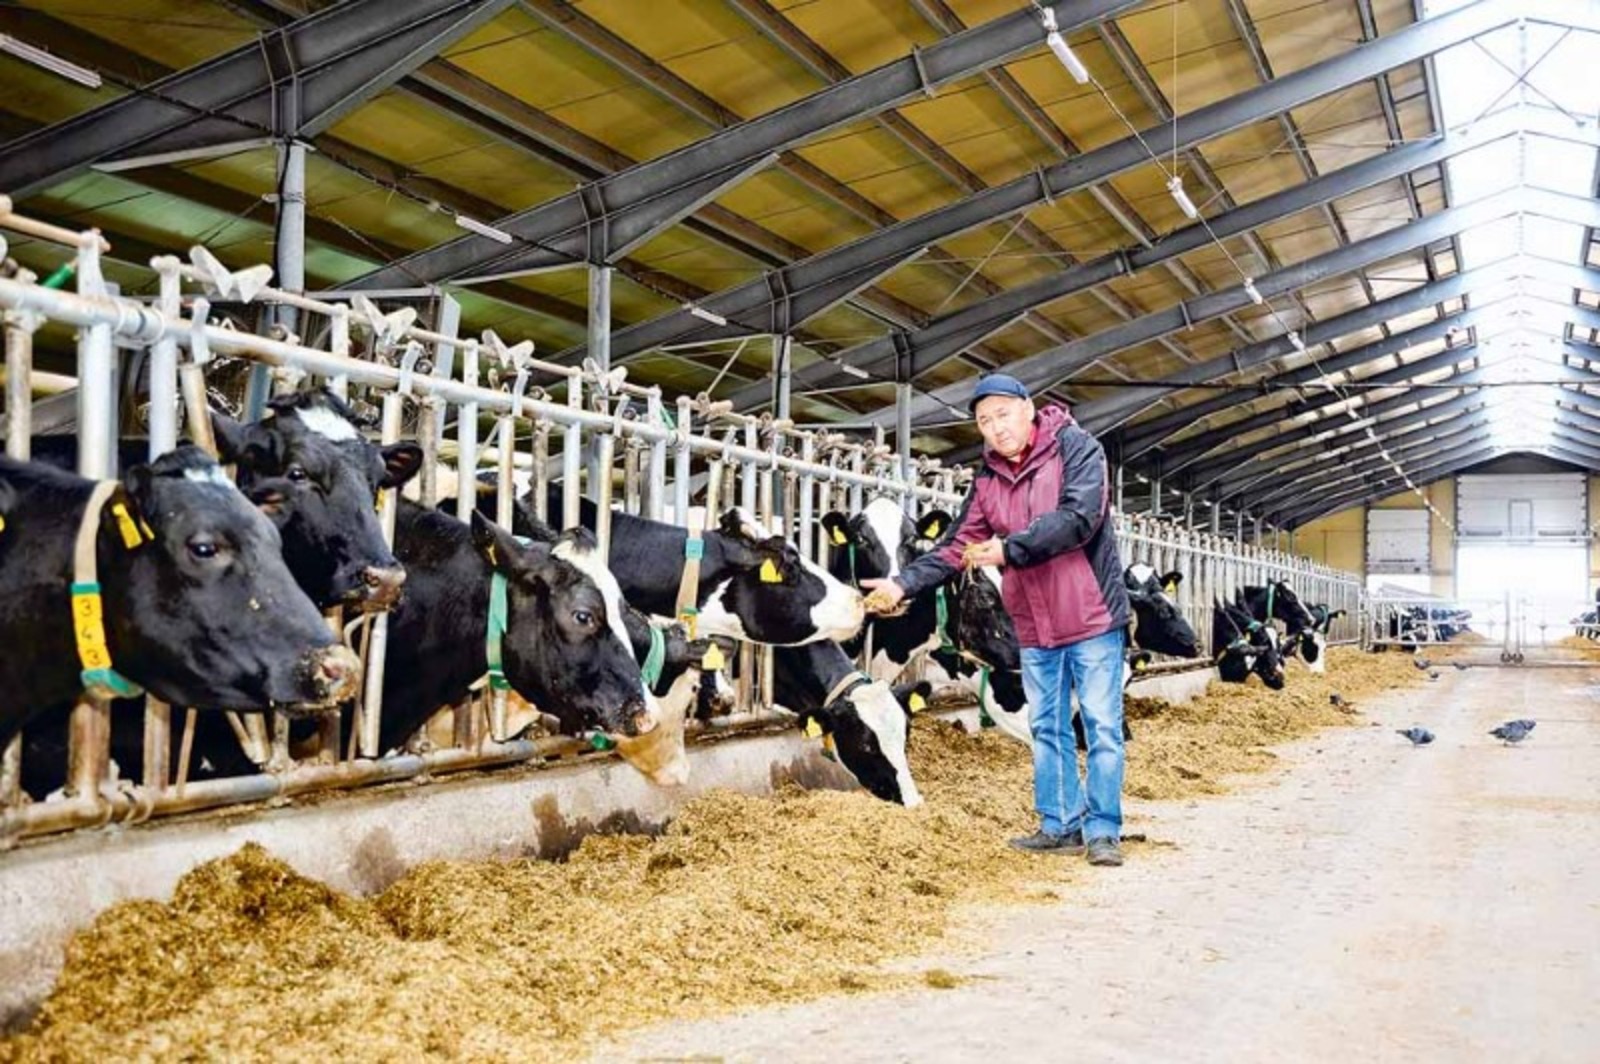 Ринат РАЗАПОВ Заместитель директора АП имени Калинина Рахимгалей Нургалеев: «Много молока только сытые коровы могут дать».